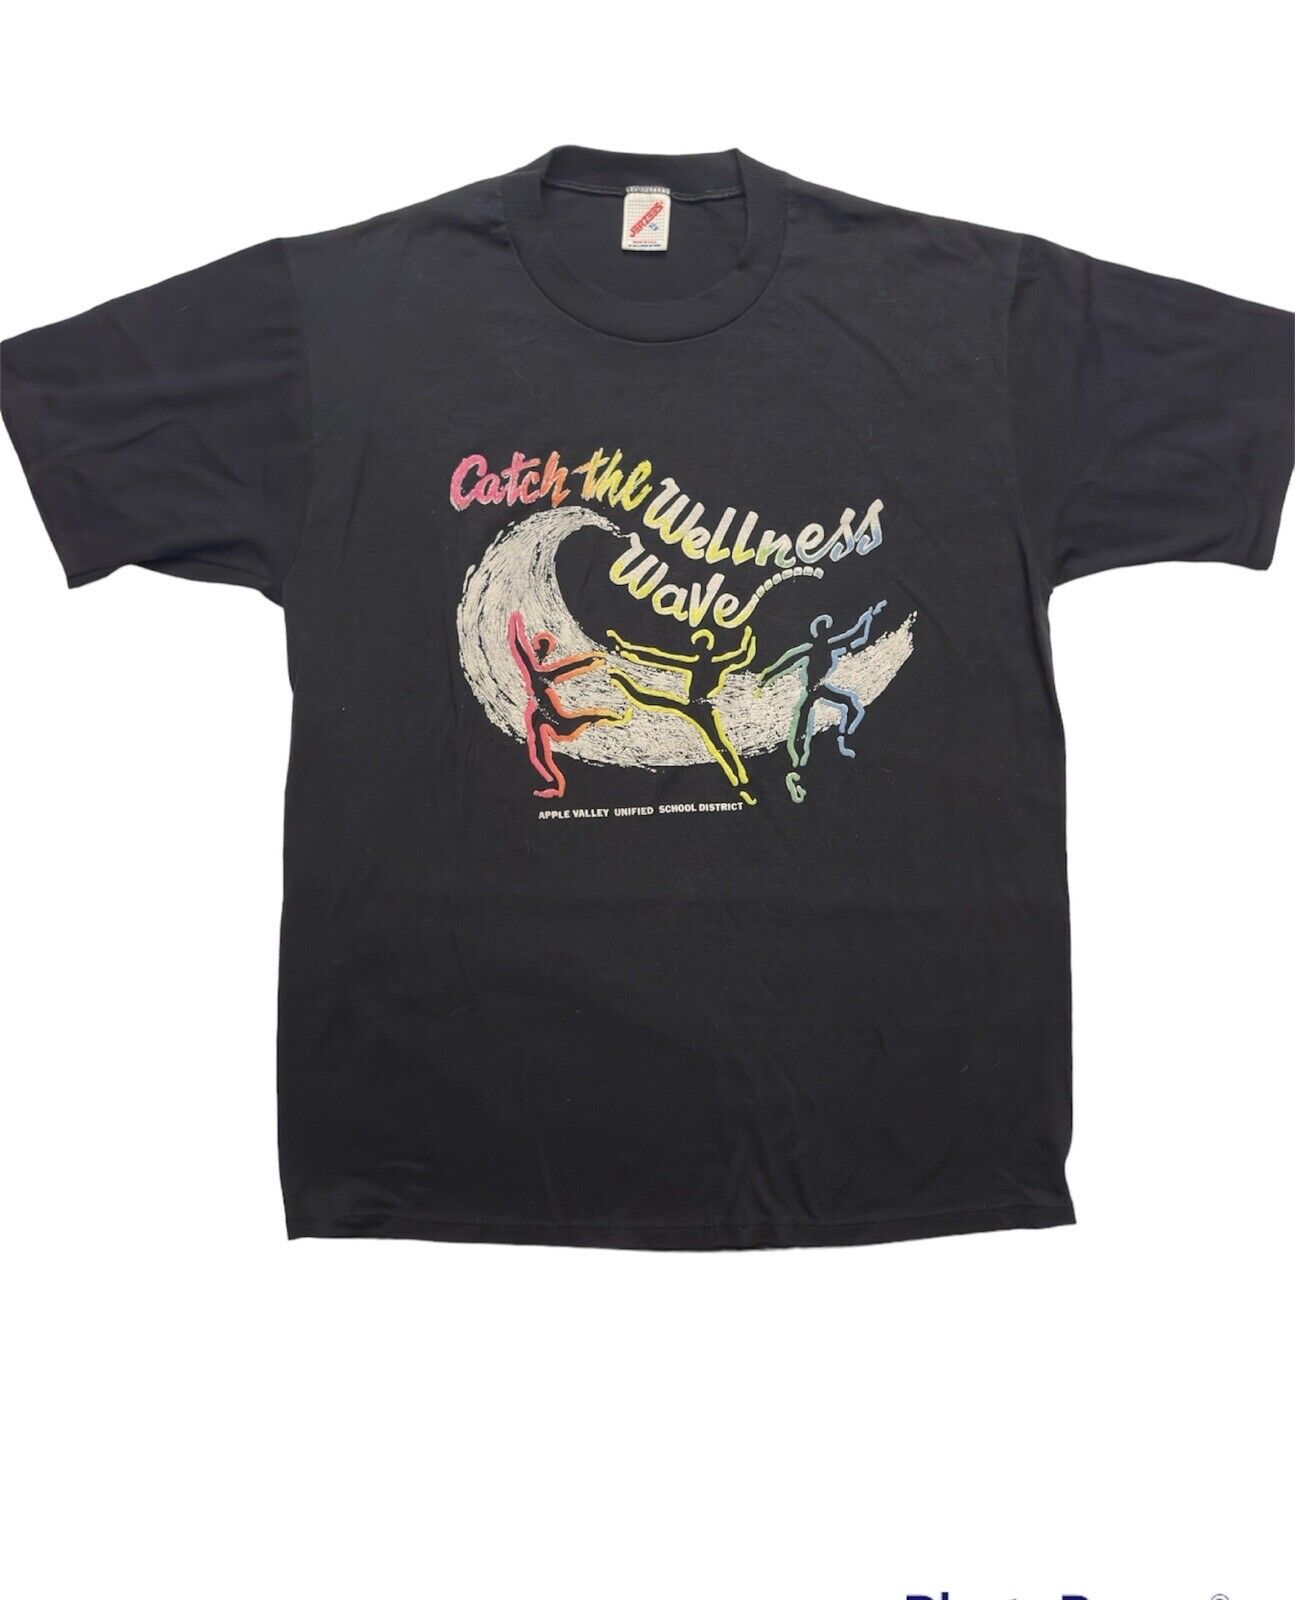 Vintage 1980’s Retro Dance Multicolored Mens Graphic T-shirt Size XL Black